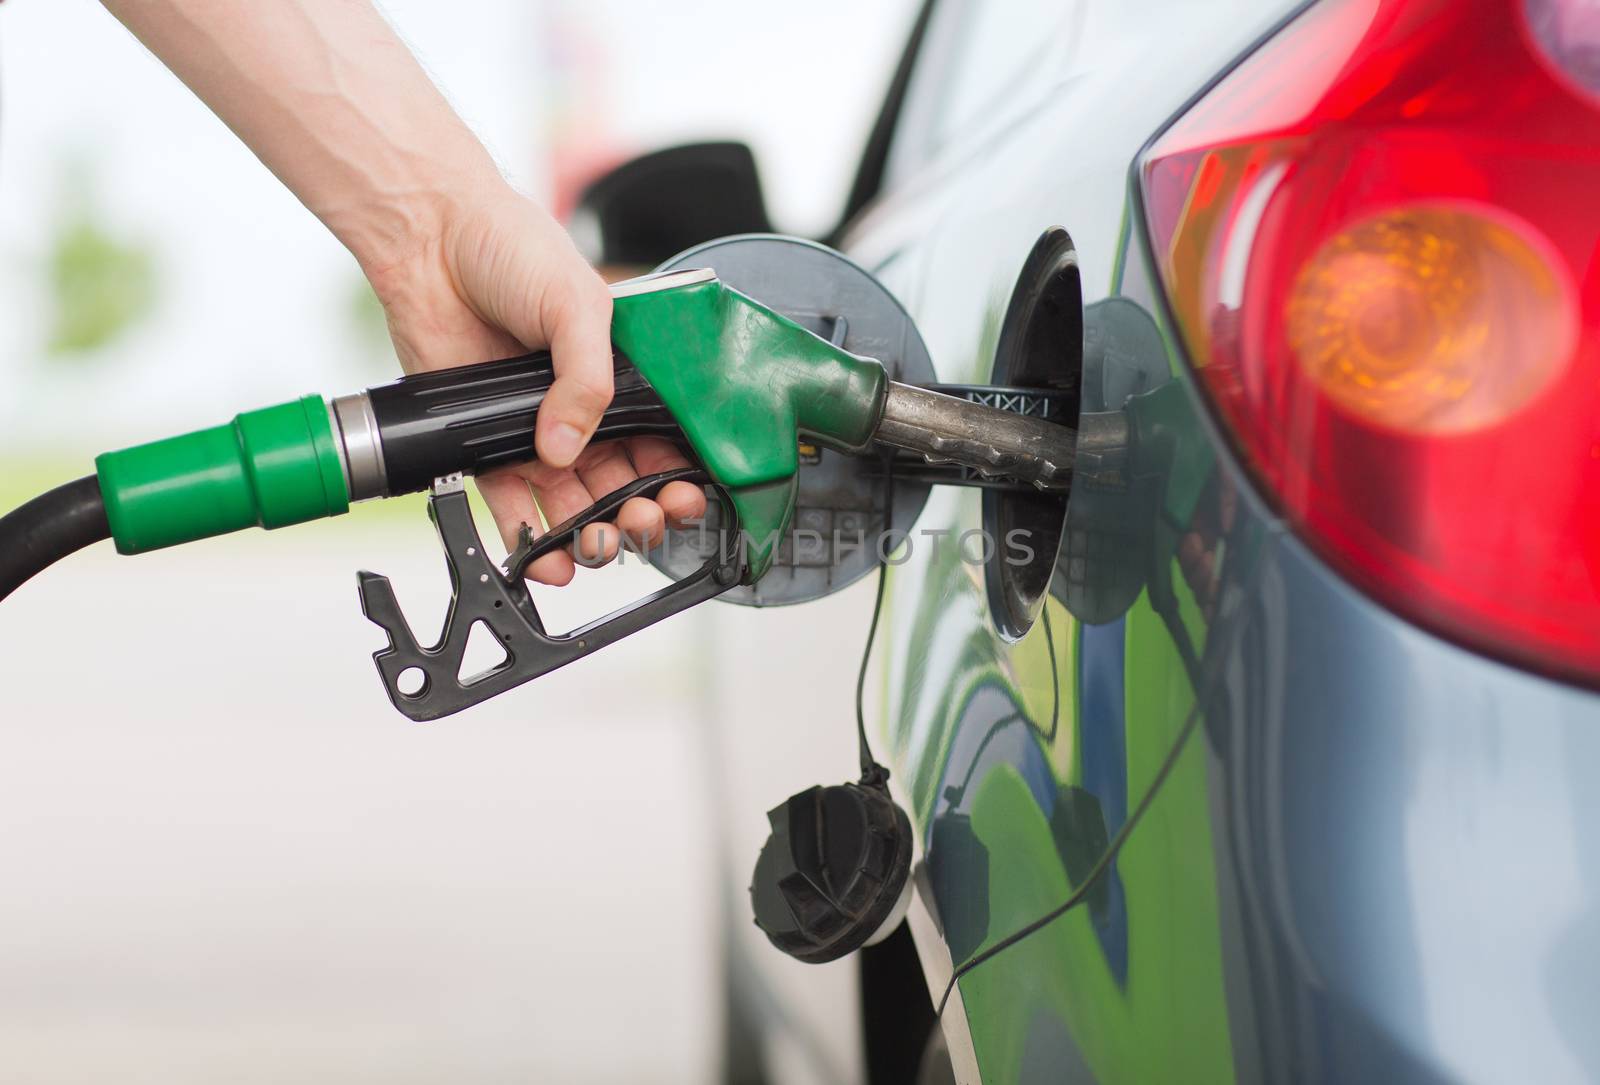 man pumping gasoline fuel in car at gas station by dolgachov